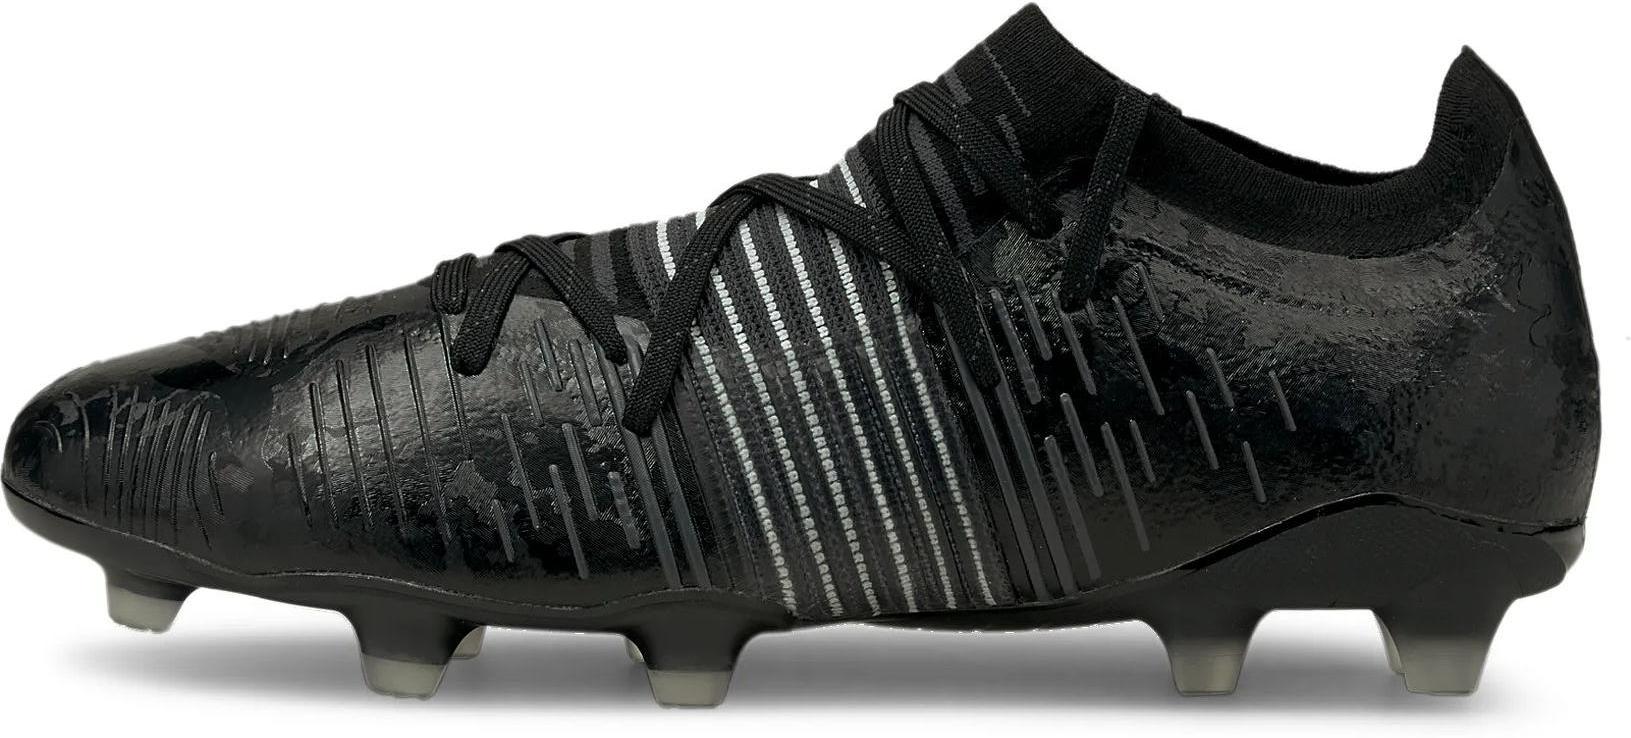 Football Shoes Puma Future Z 2 1 Fg Ag Top4football Com